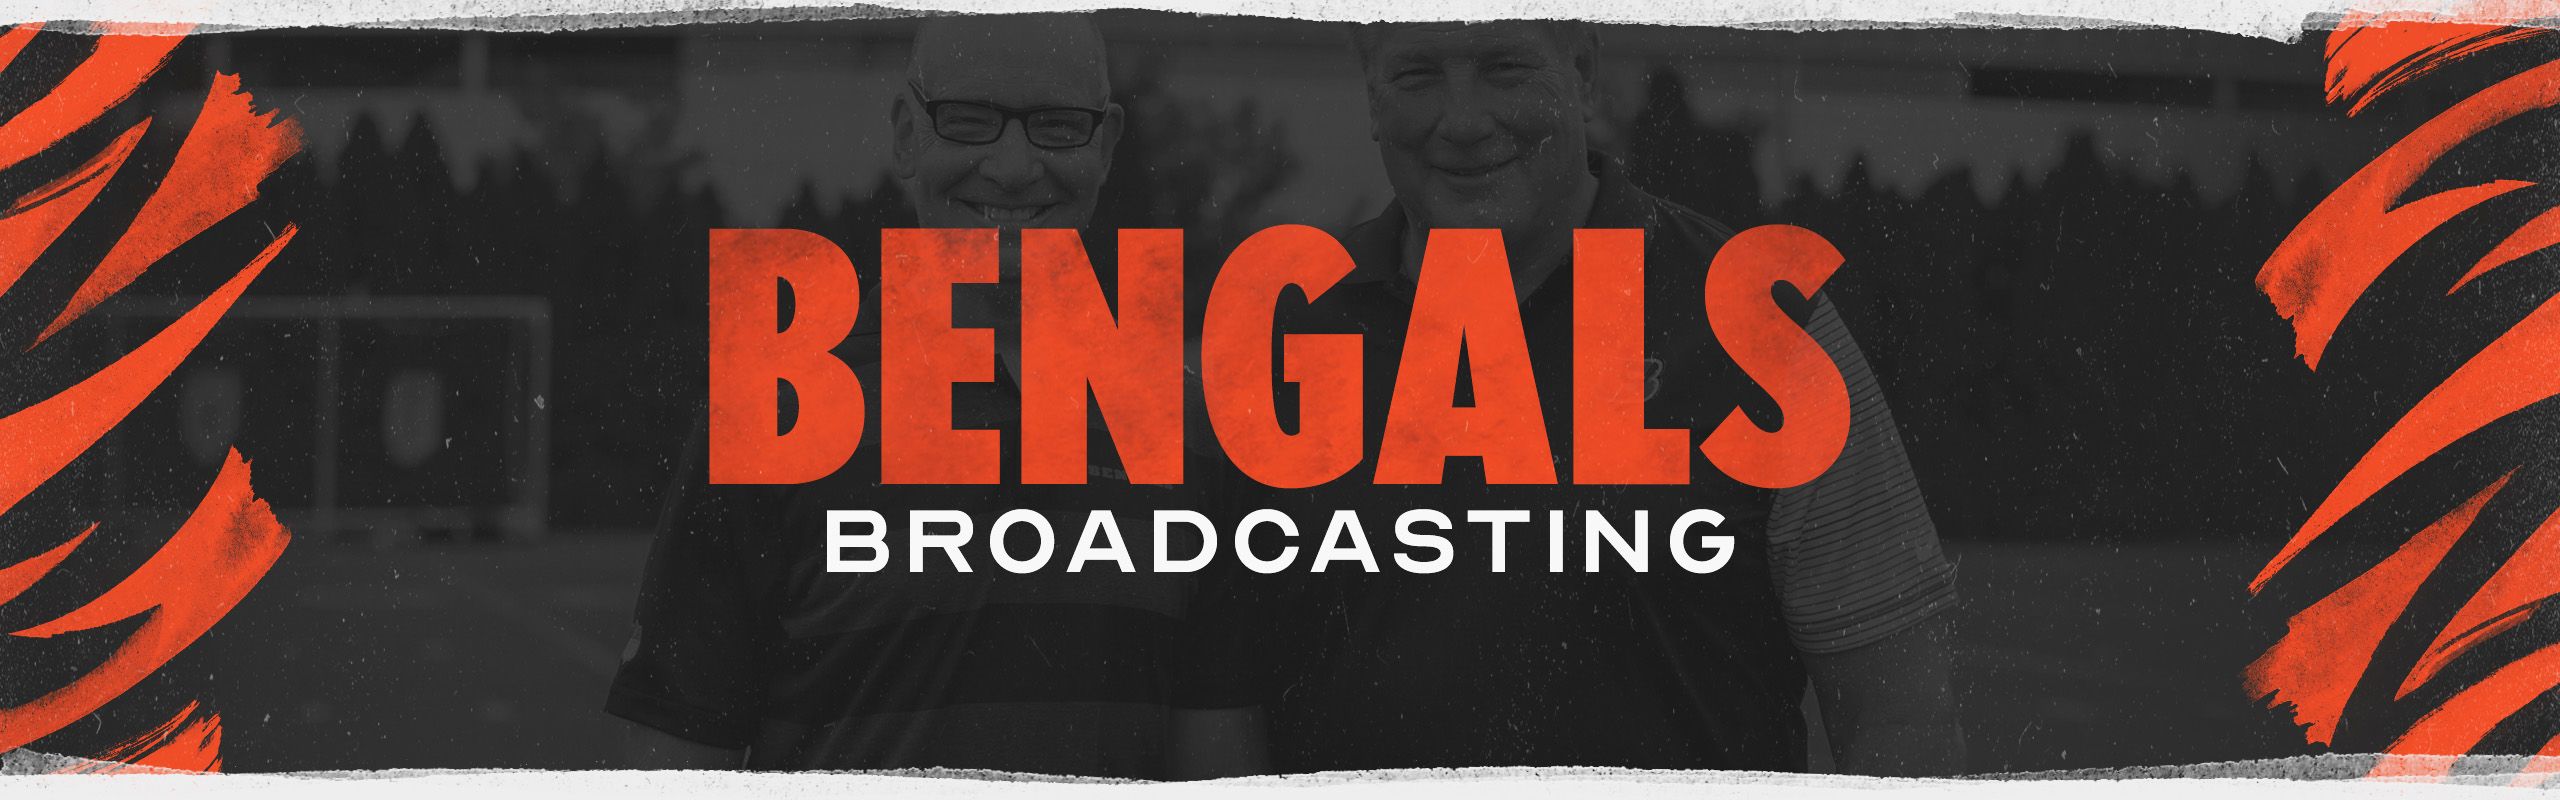 Cincinnati Bengals Broadcast Bengals